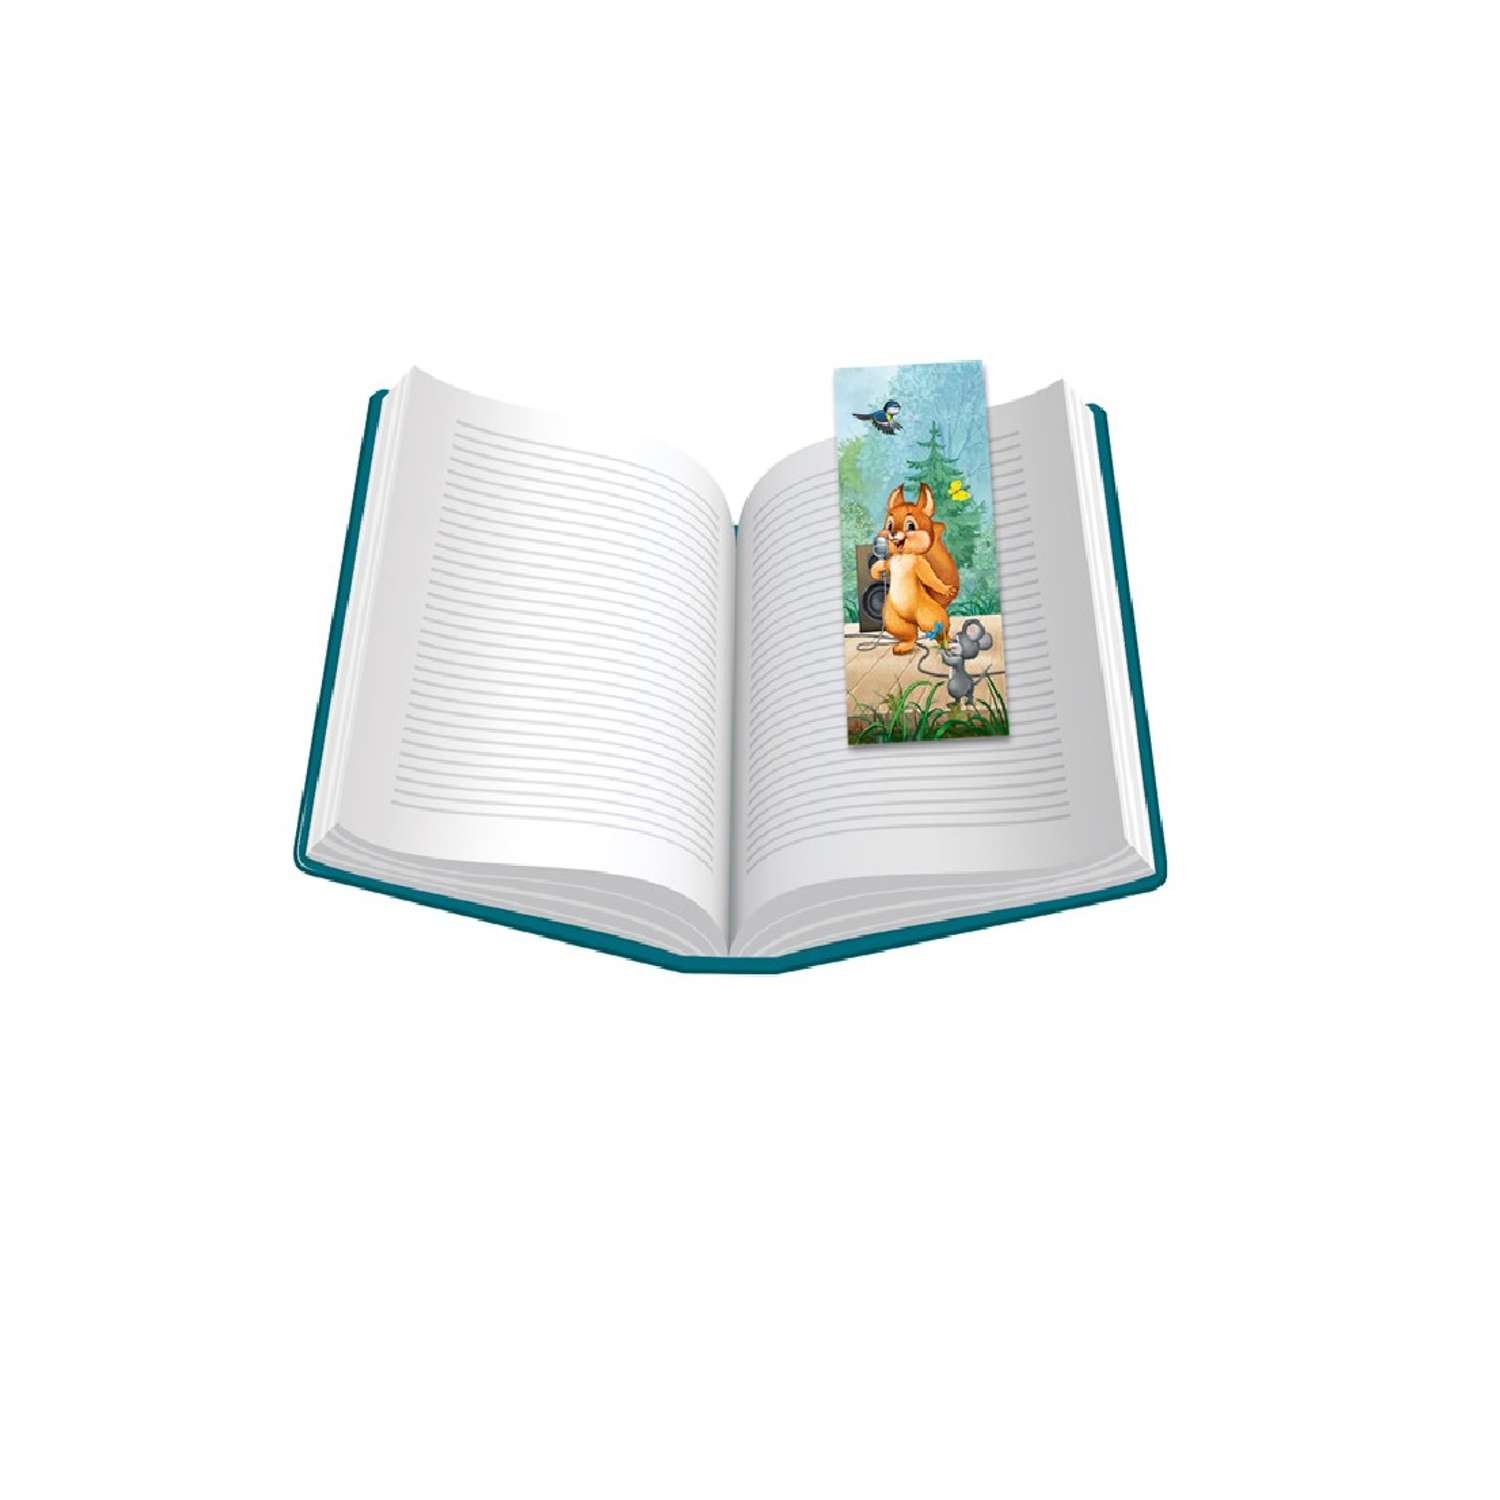 Закладки картонные Империя поздравлений для учебников тетрадей книг со зверьками ретро коллекция 5 шт - фото 2